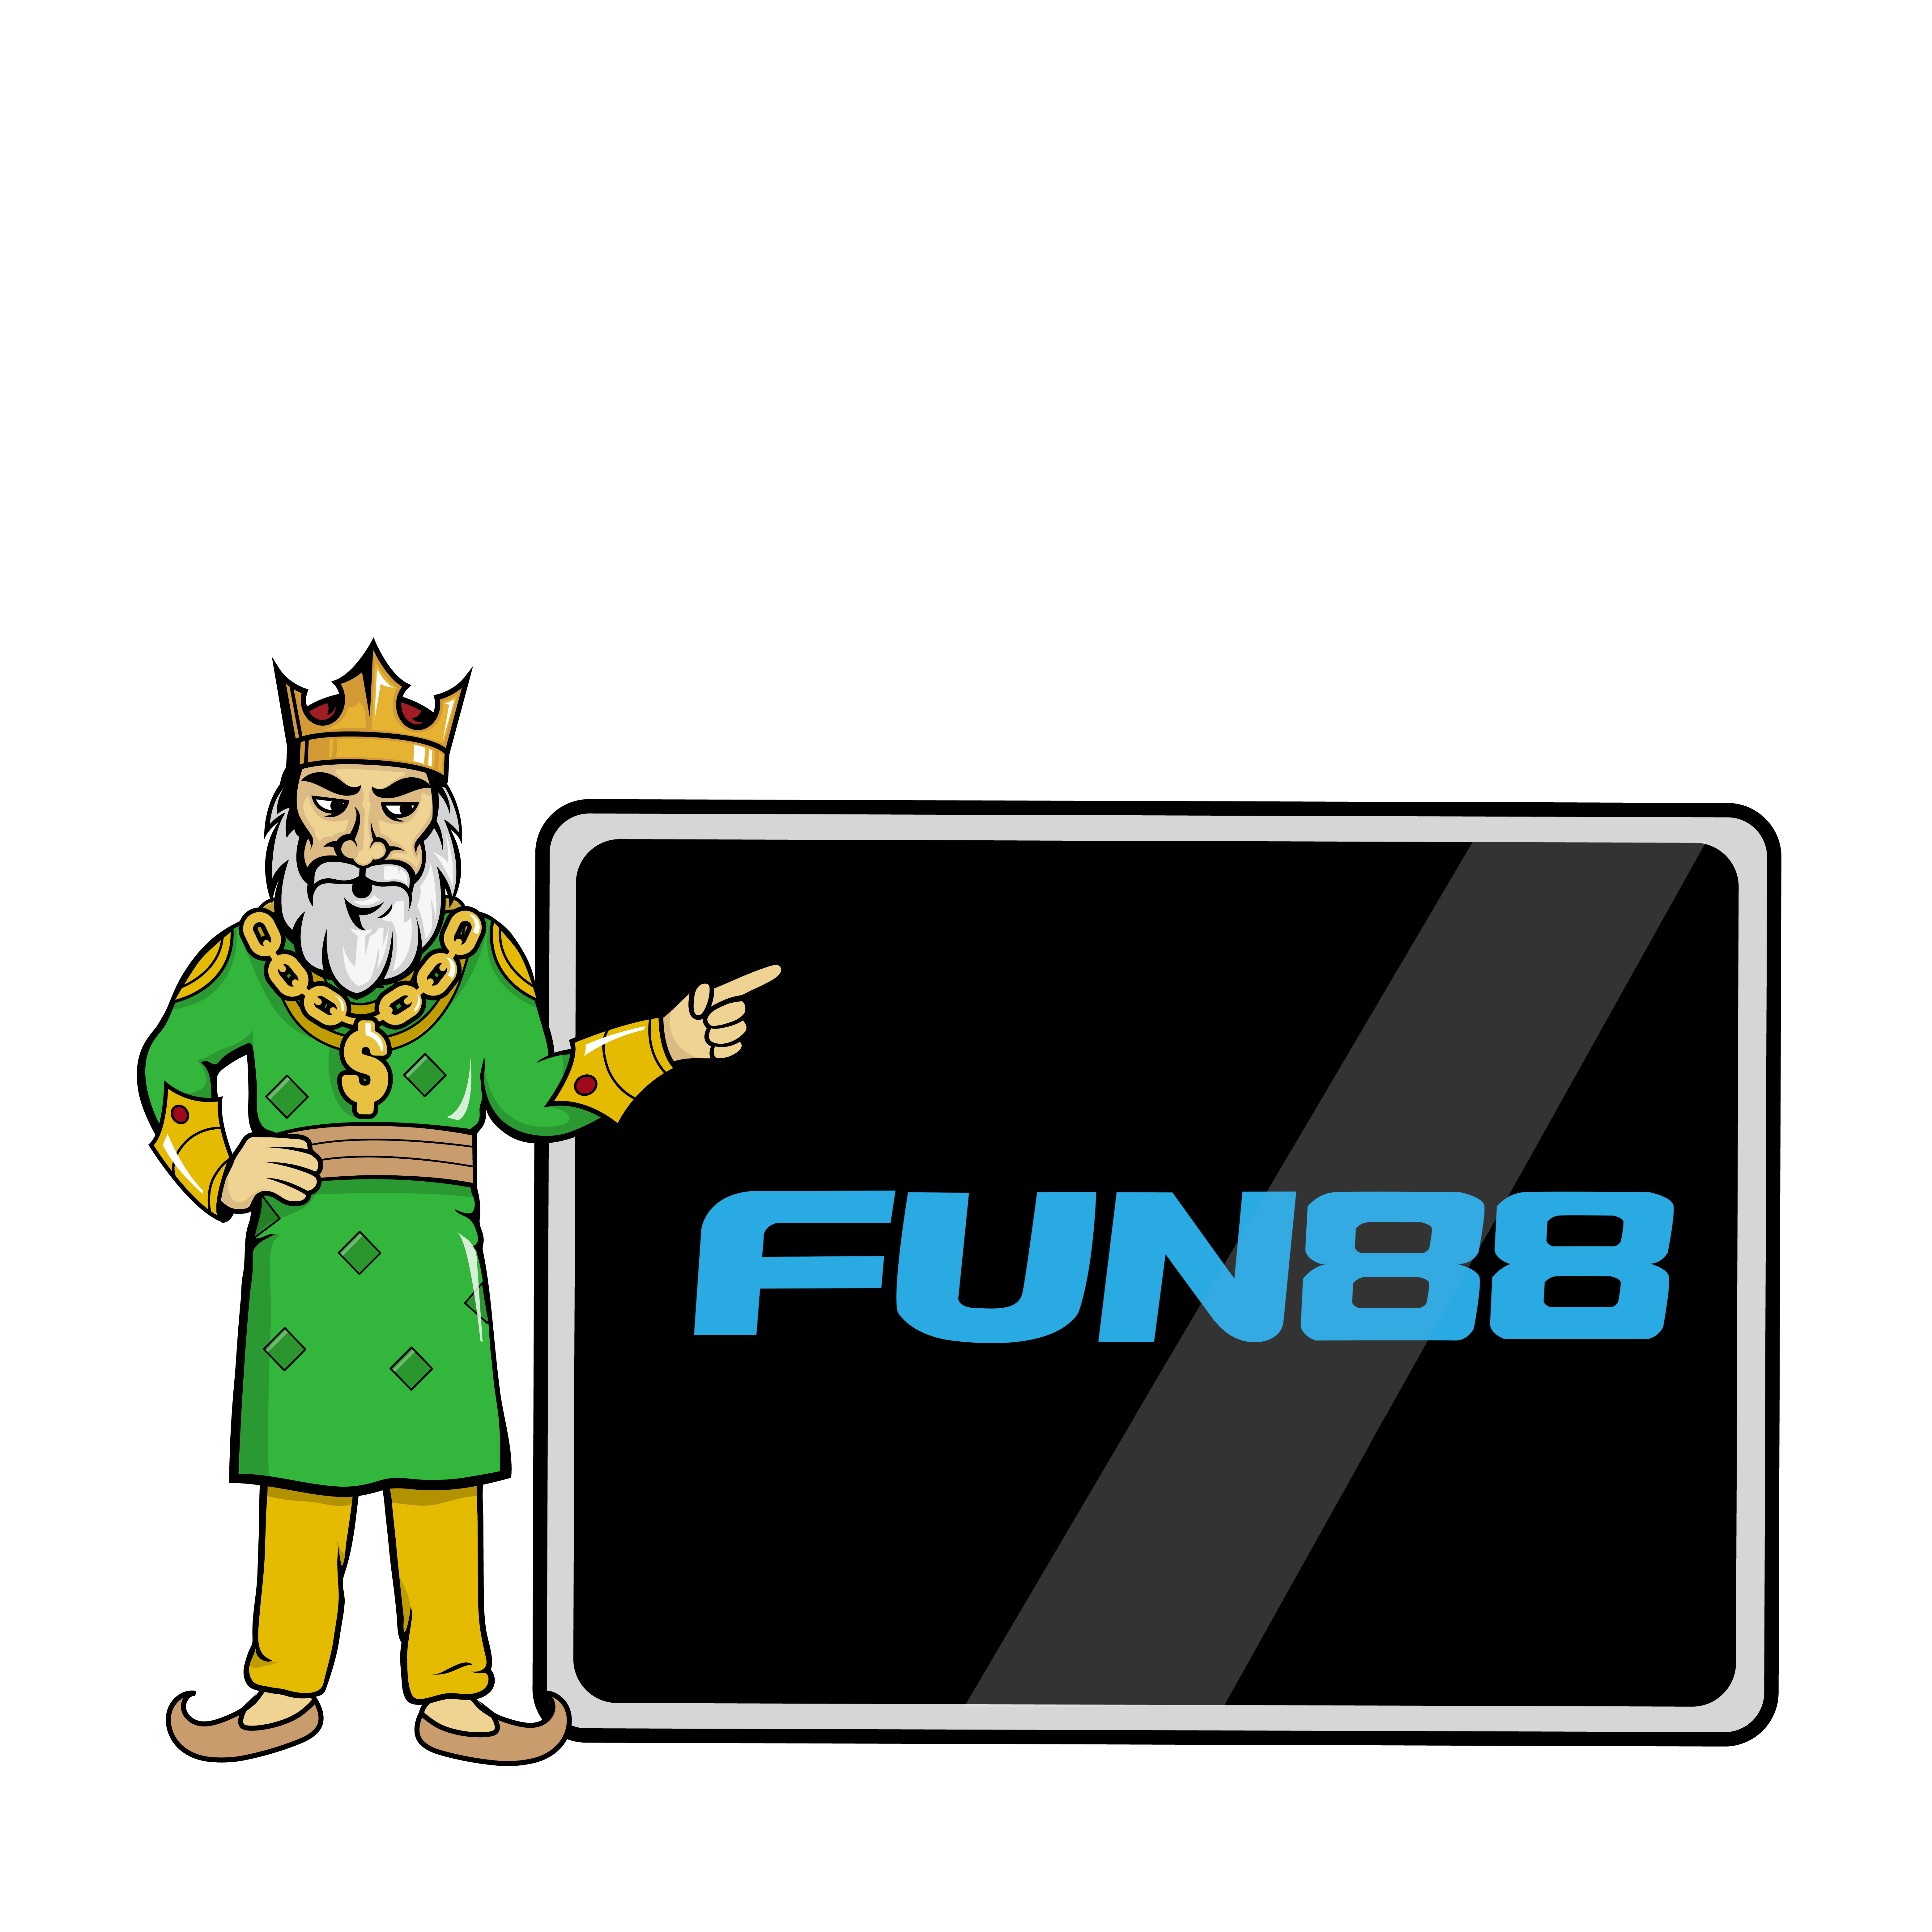 Raja with Fun88 logo